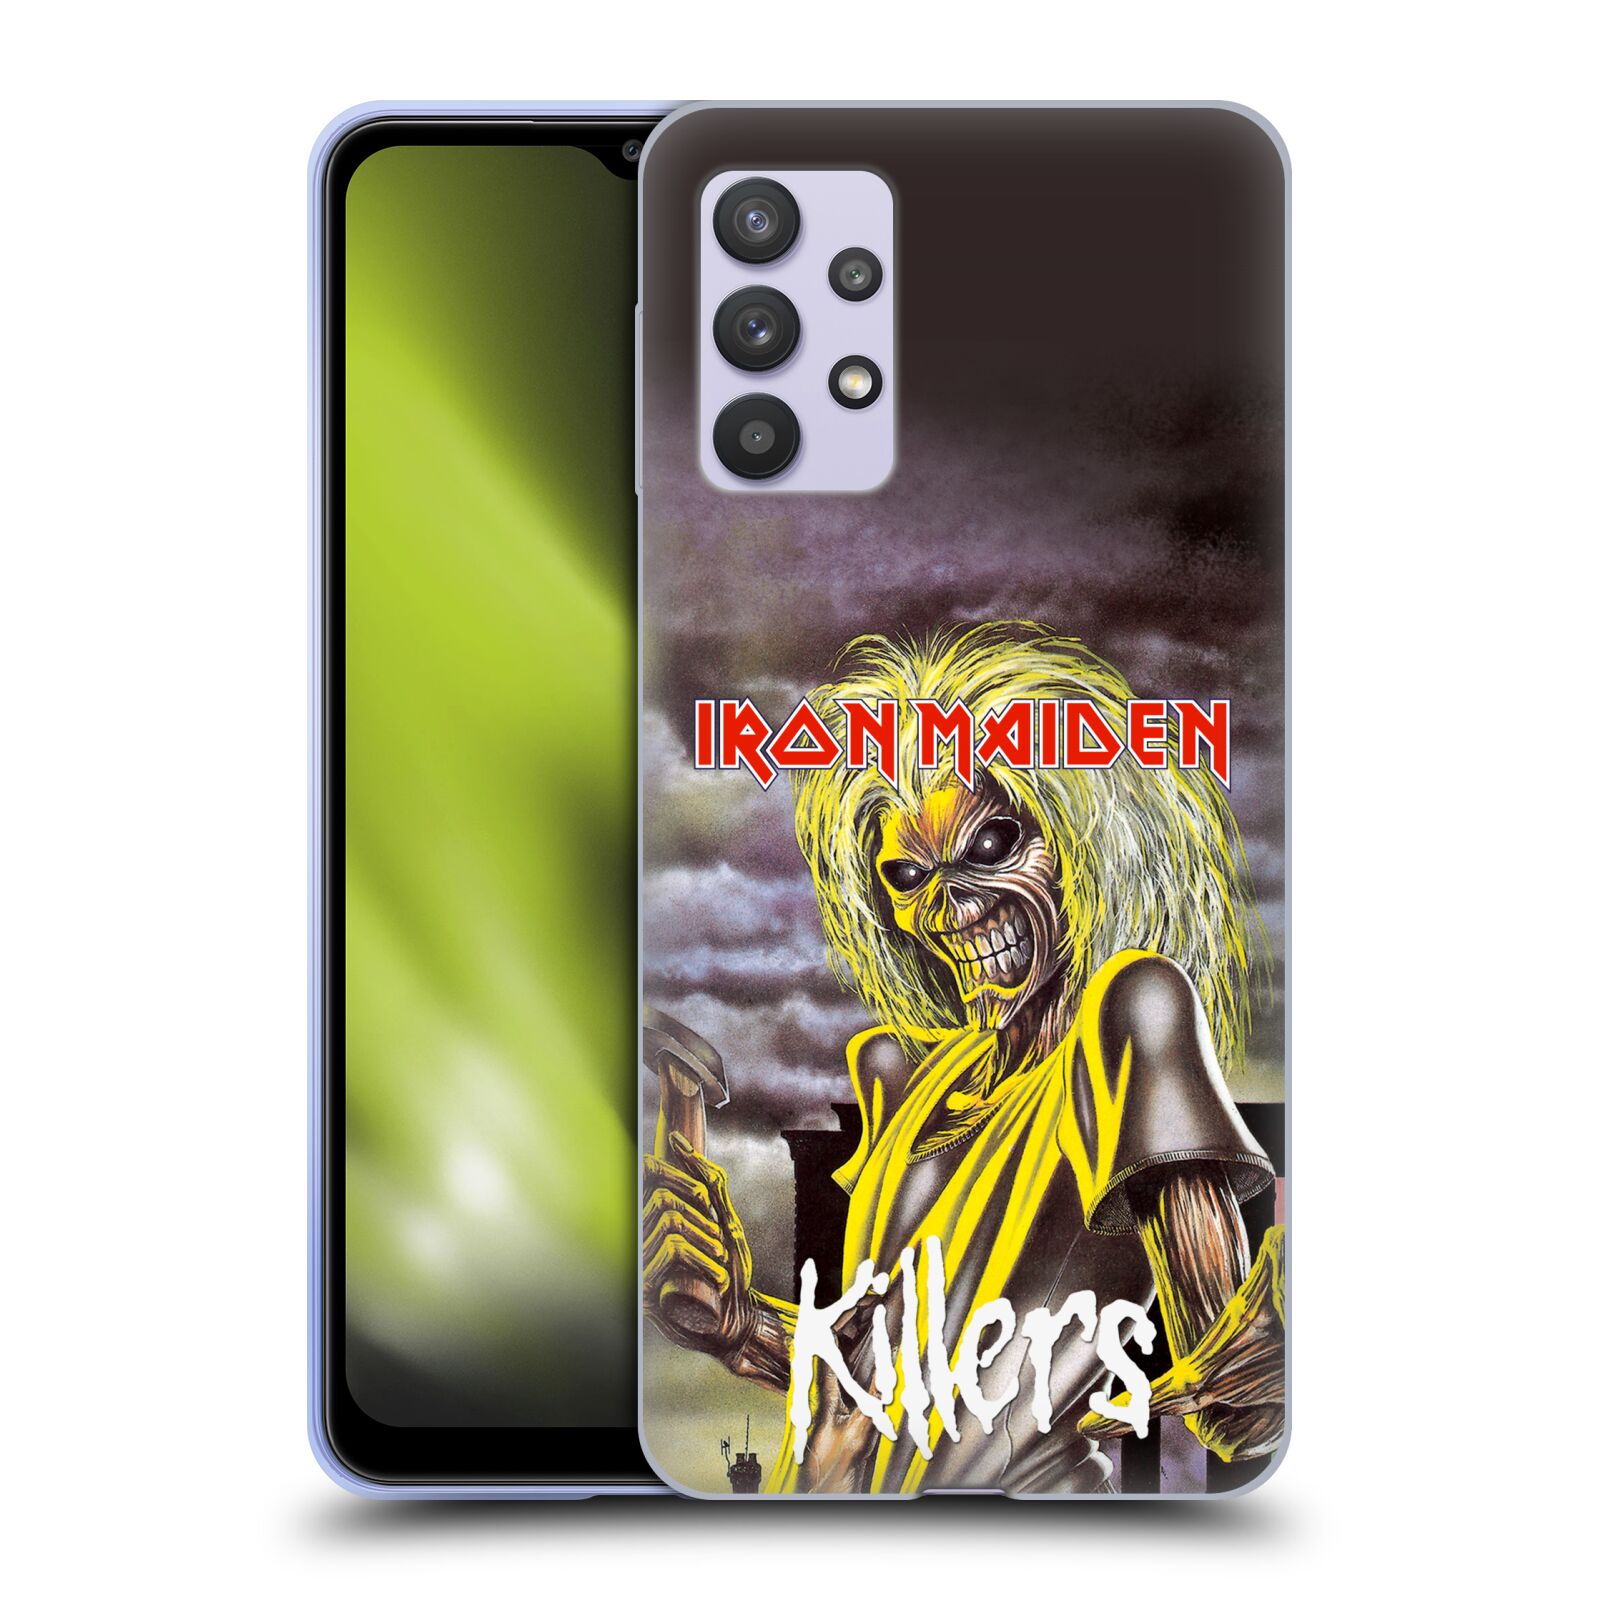 Silikonové pouzdro na mobil Samsung Galaxy A32 5G - Head Case - Iron Maiden - Killers (Silikonový kryt, obal, pouzdro na mobilní telefon Samsung Galaxy A32 5G (SM-A326B) s motivem Iron Maiden - Killers)